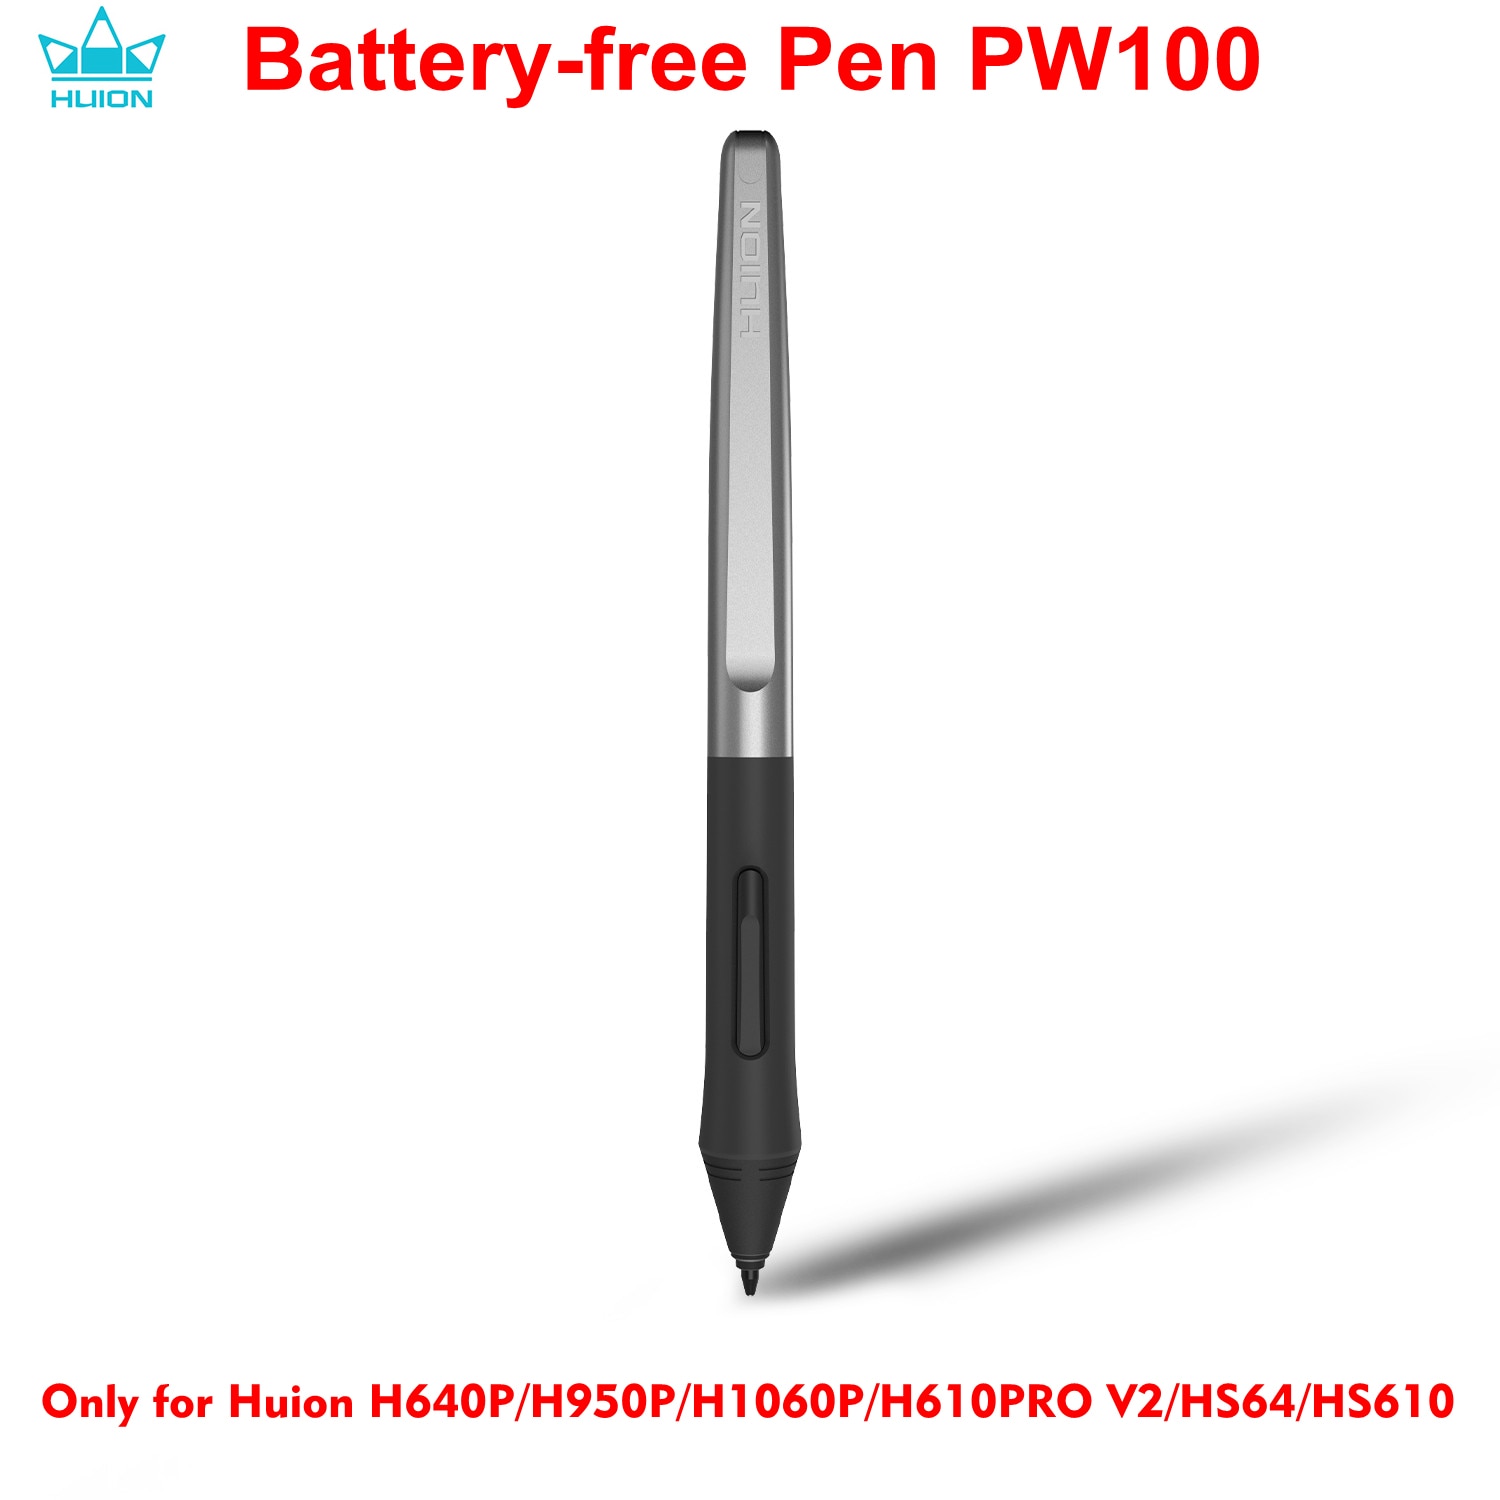 Huion-caneta digital pwpw100, dispositivo para desenho gráfico, com bateria, para huion h640p/h950p/h1060p/h610pro...